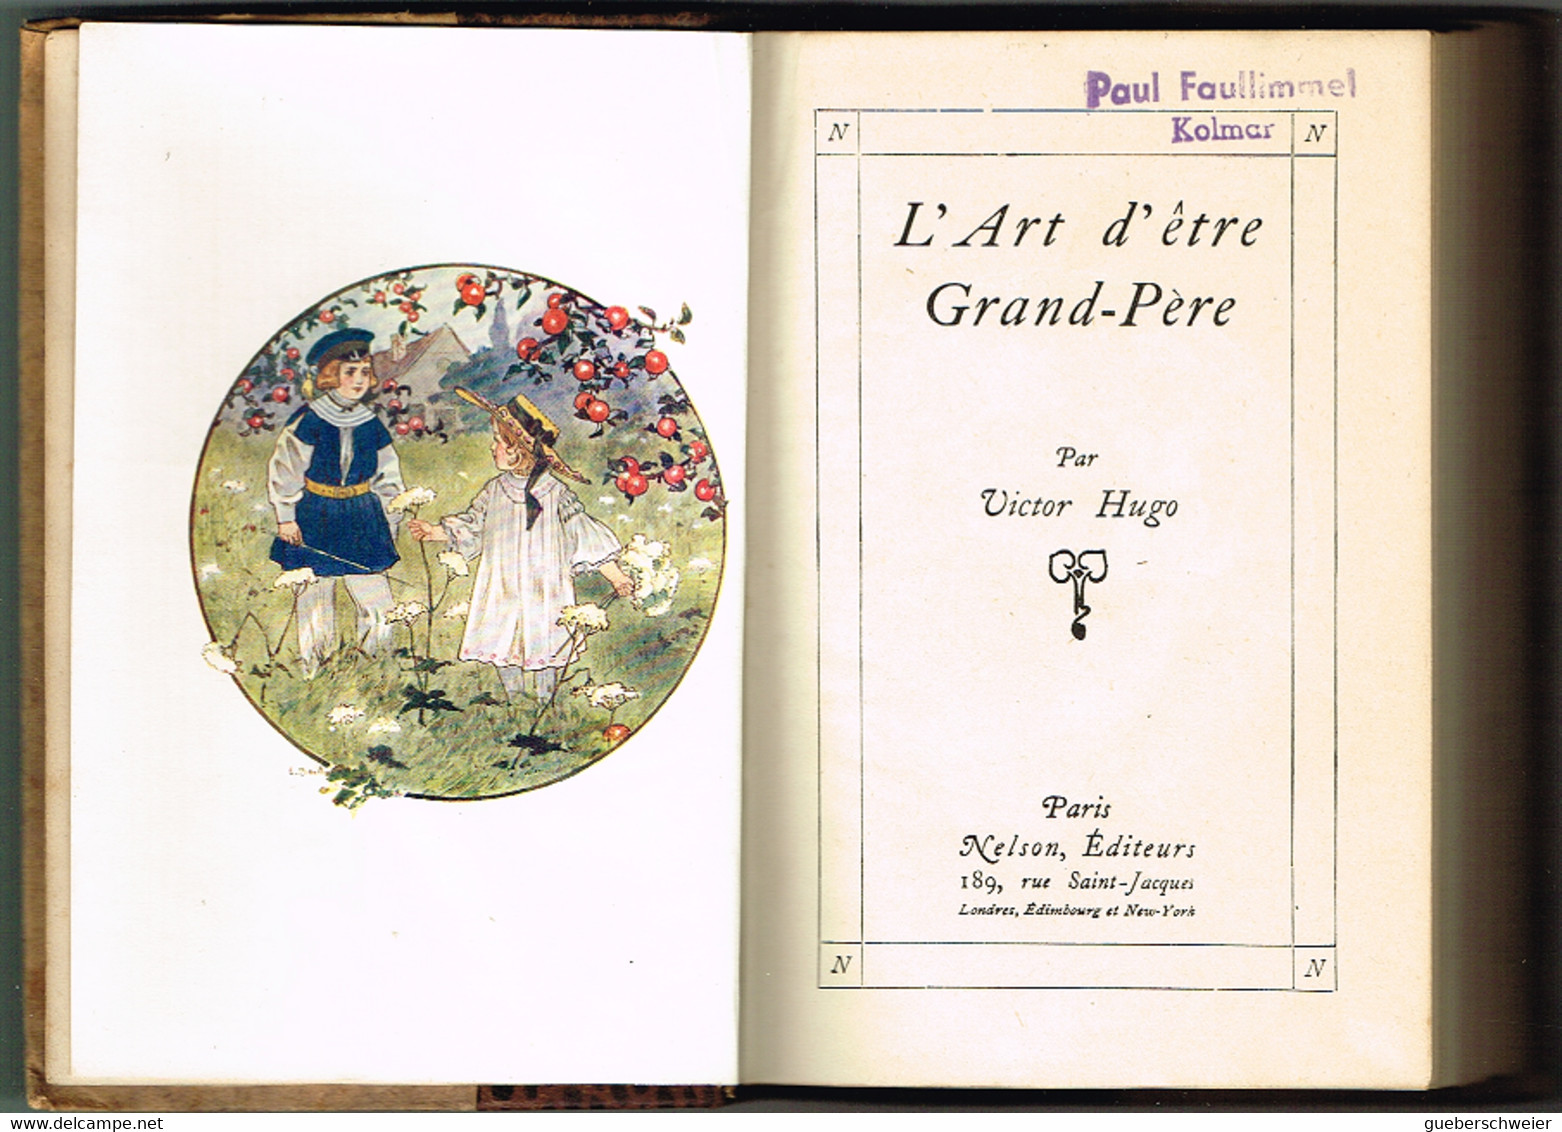 collection de 8 livres anciens des oeuvres complètes de Victor Hugo Editions Nelson Paris